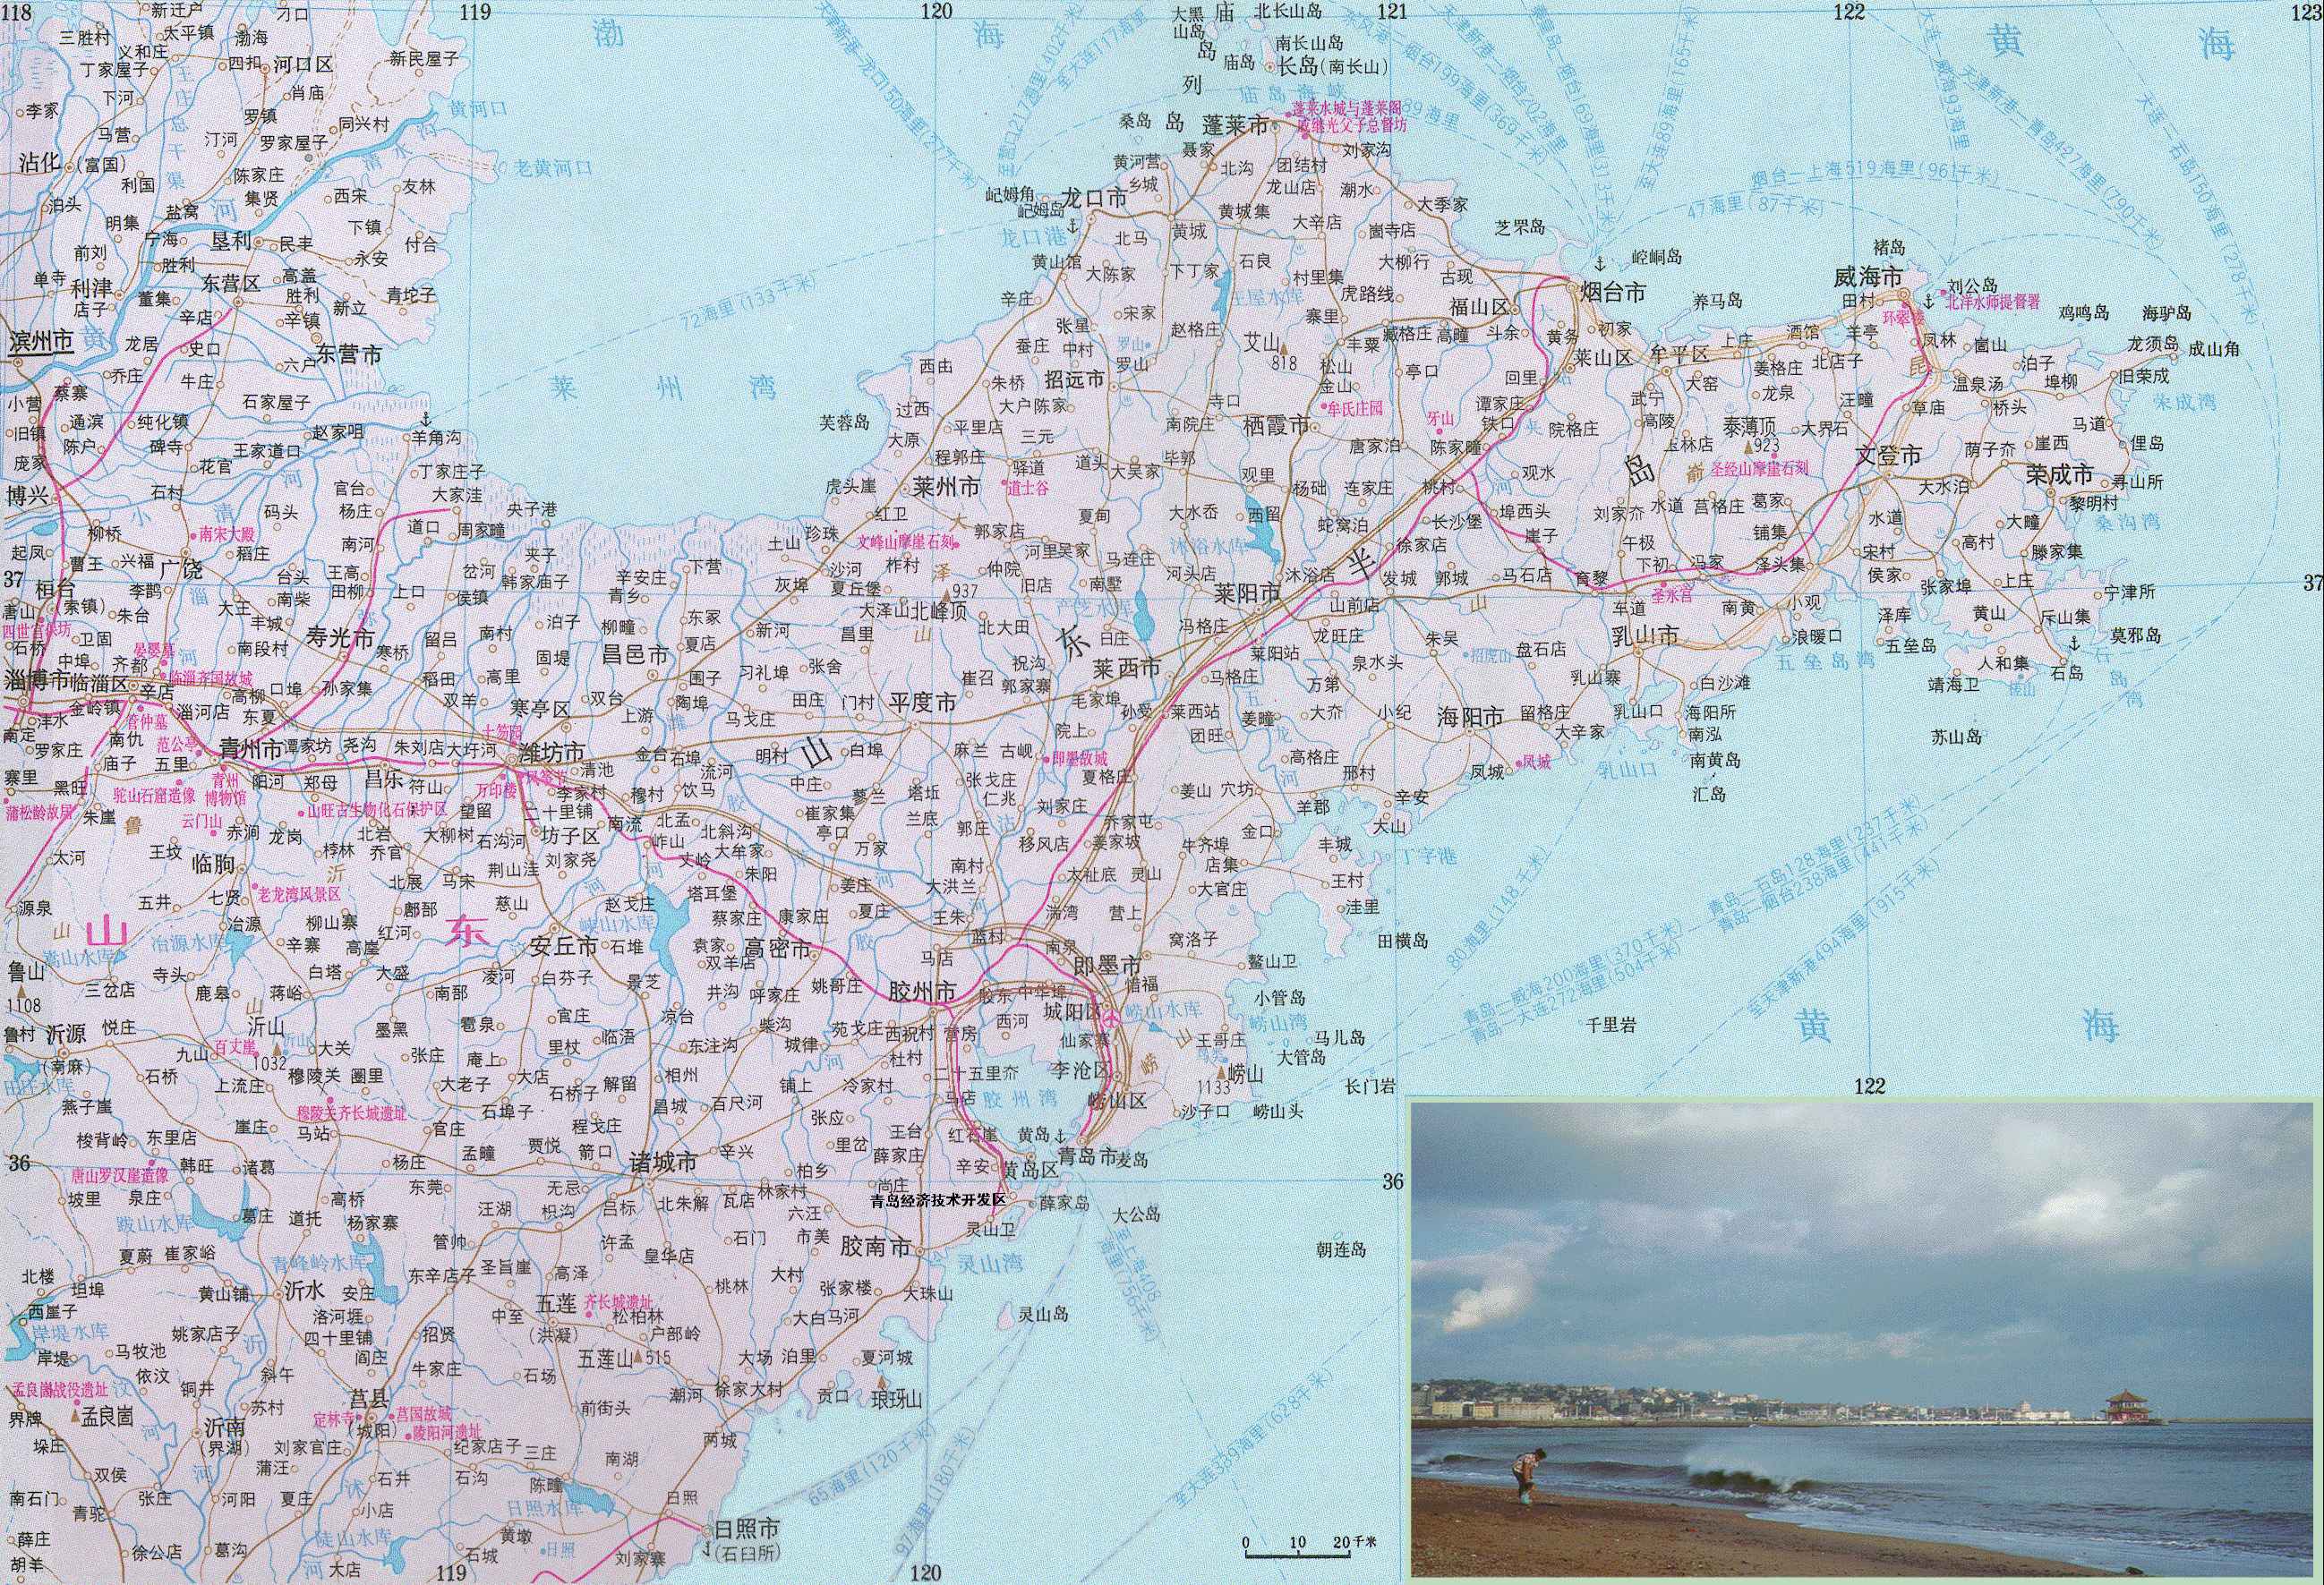 中国地图 山东 >> 山东半岛地图高清版  分类: 山东  更新:2015-8-24图片